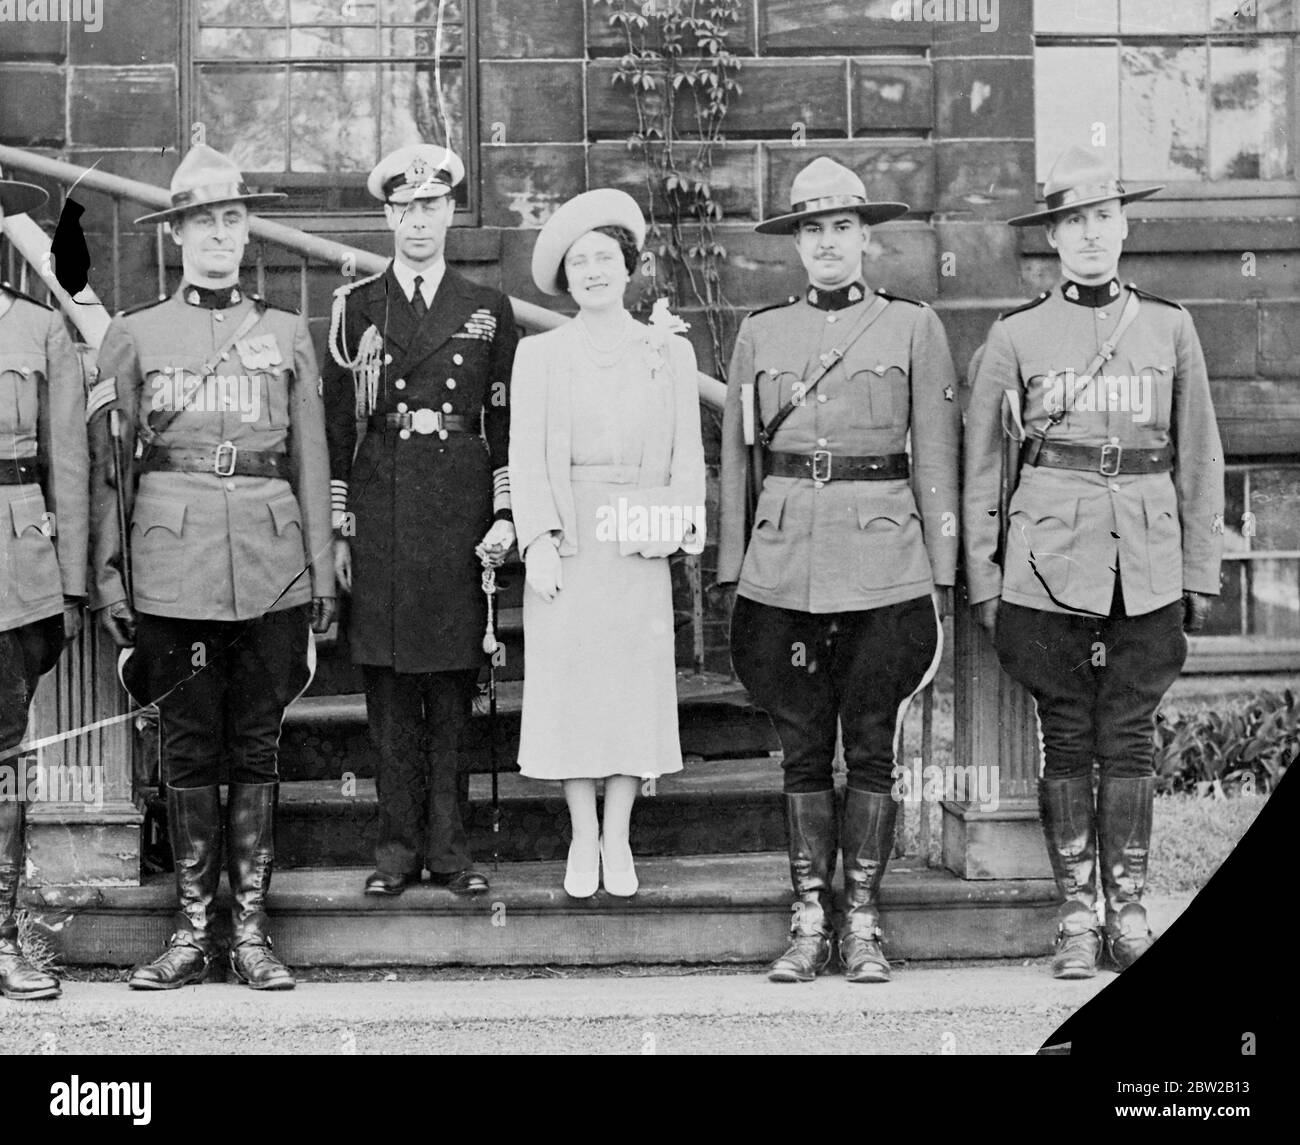 Les adieux royaux au Canada : le roi et la reine avec les quatre membres de la police montée canadienne qui étaient à leurs gardes du corps personnels pendant la tournée canadienne. 22 juin 1939 Banque D'Images